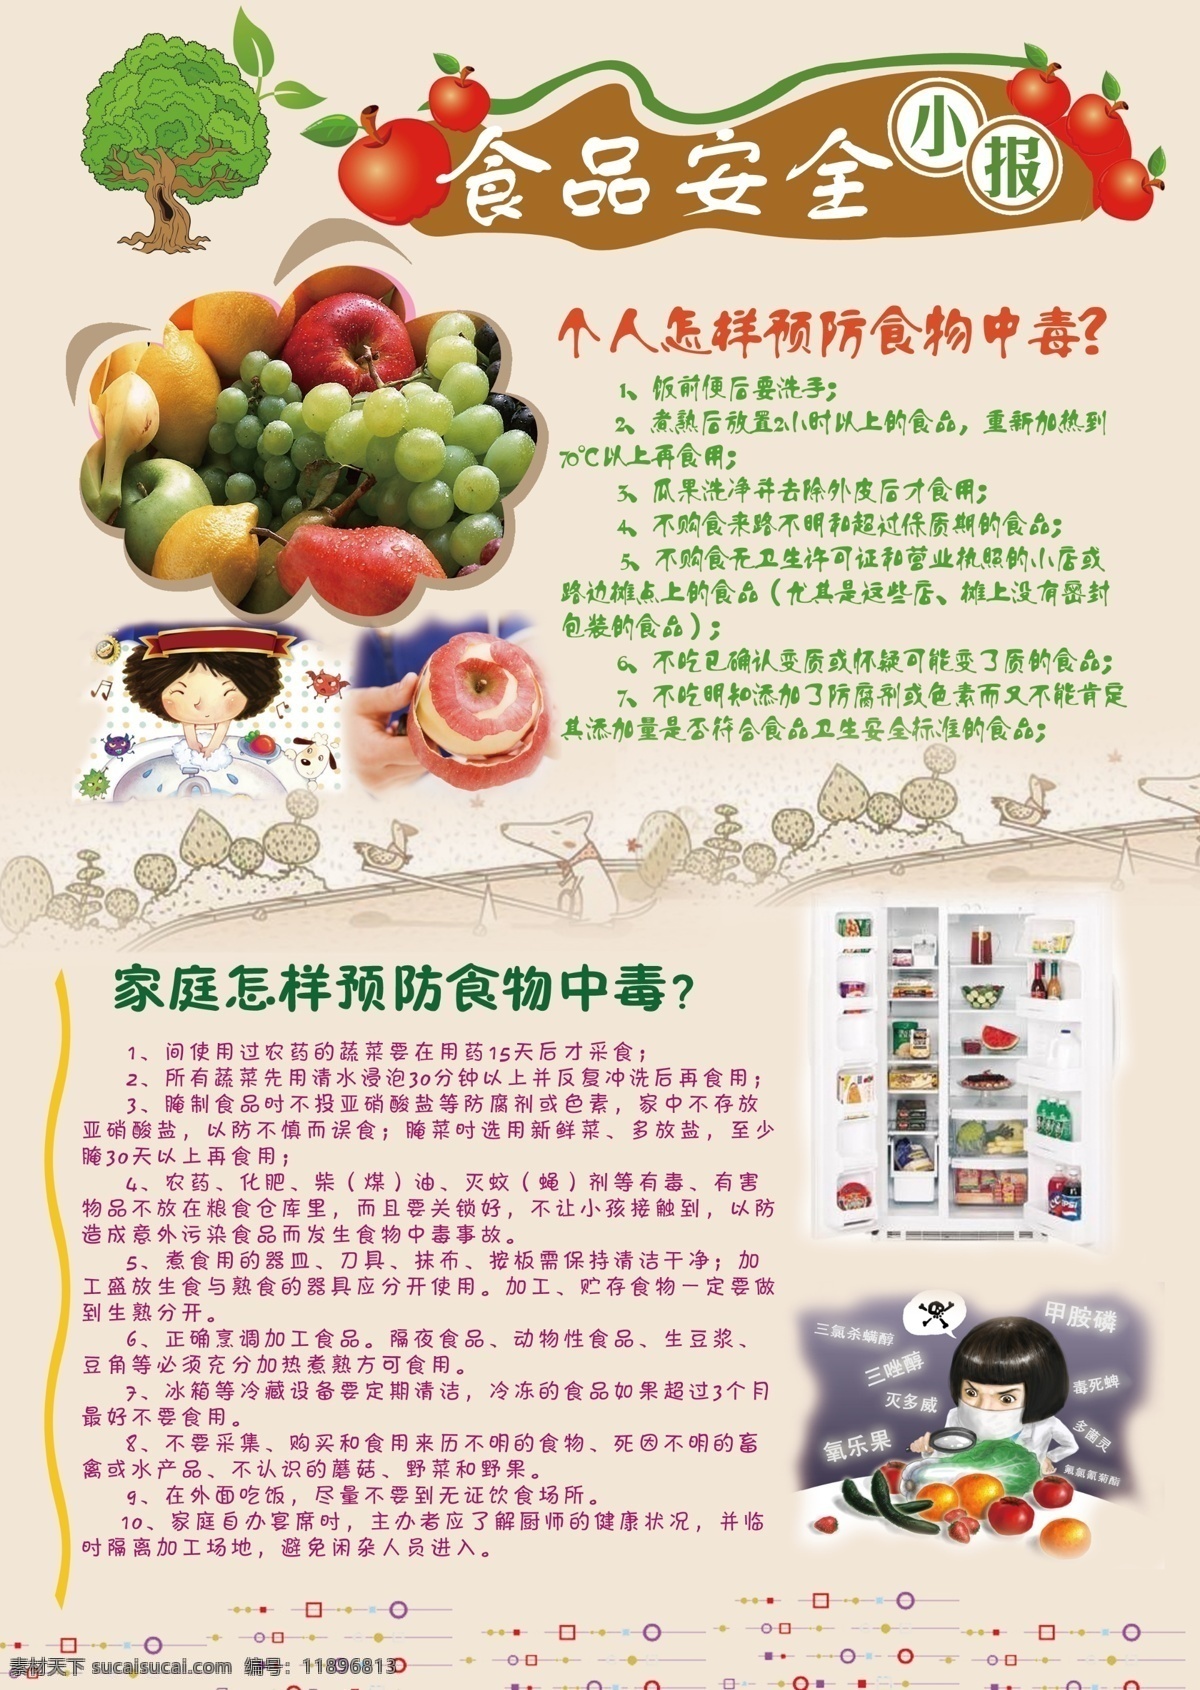 食品安全小报 食品安全 小报 卡通图 小树 苹果 水果 食品卫生 安全 分层 源文件